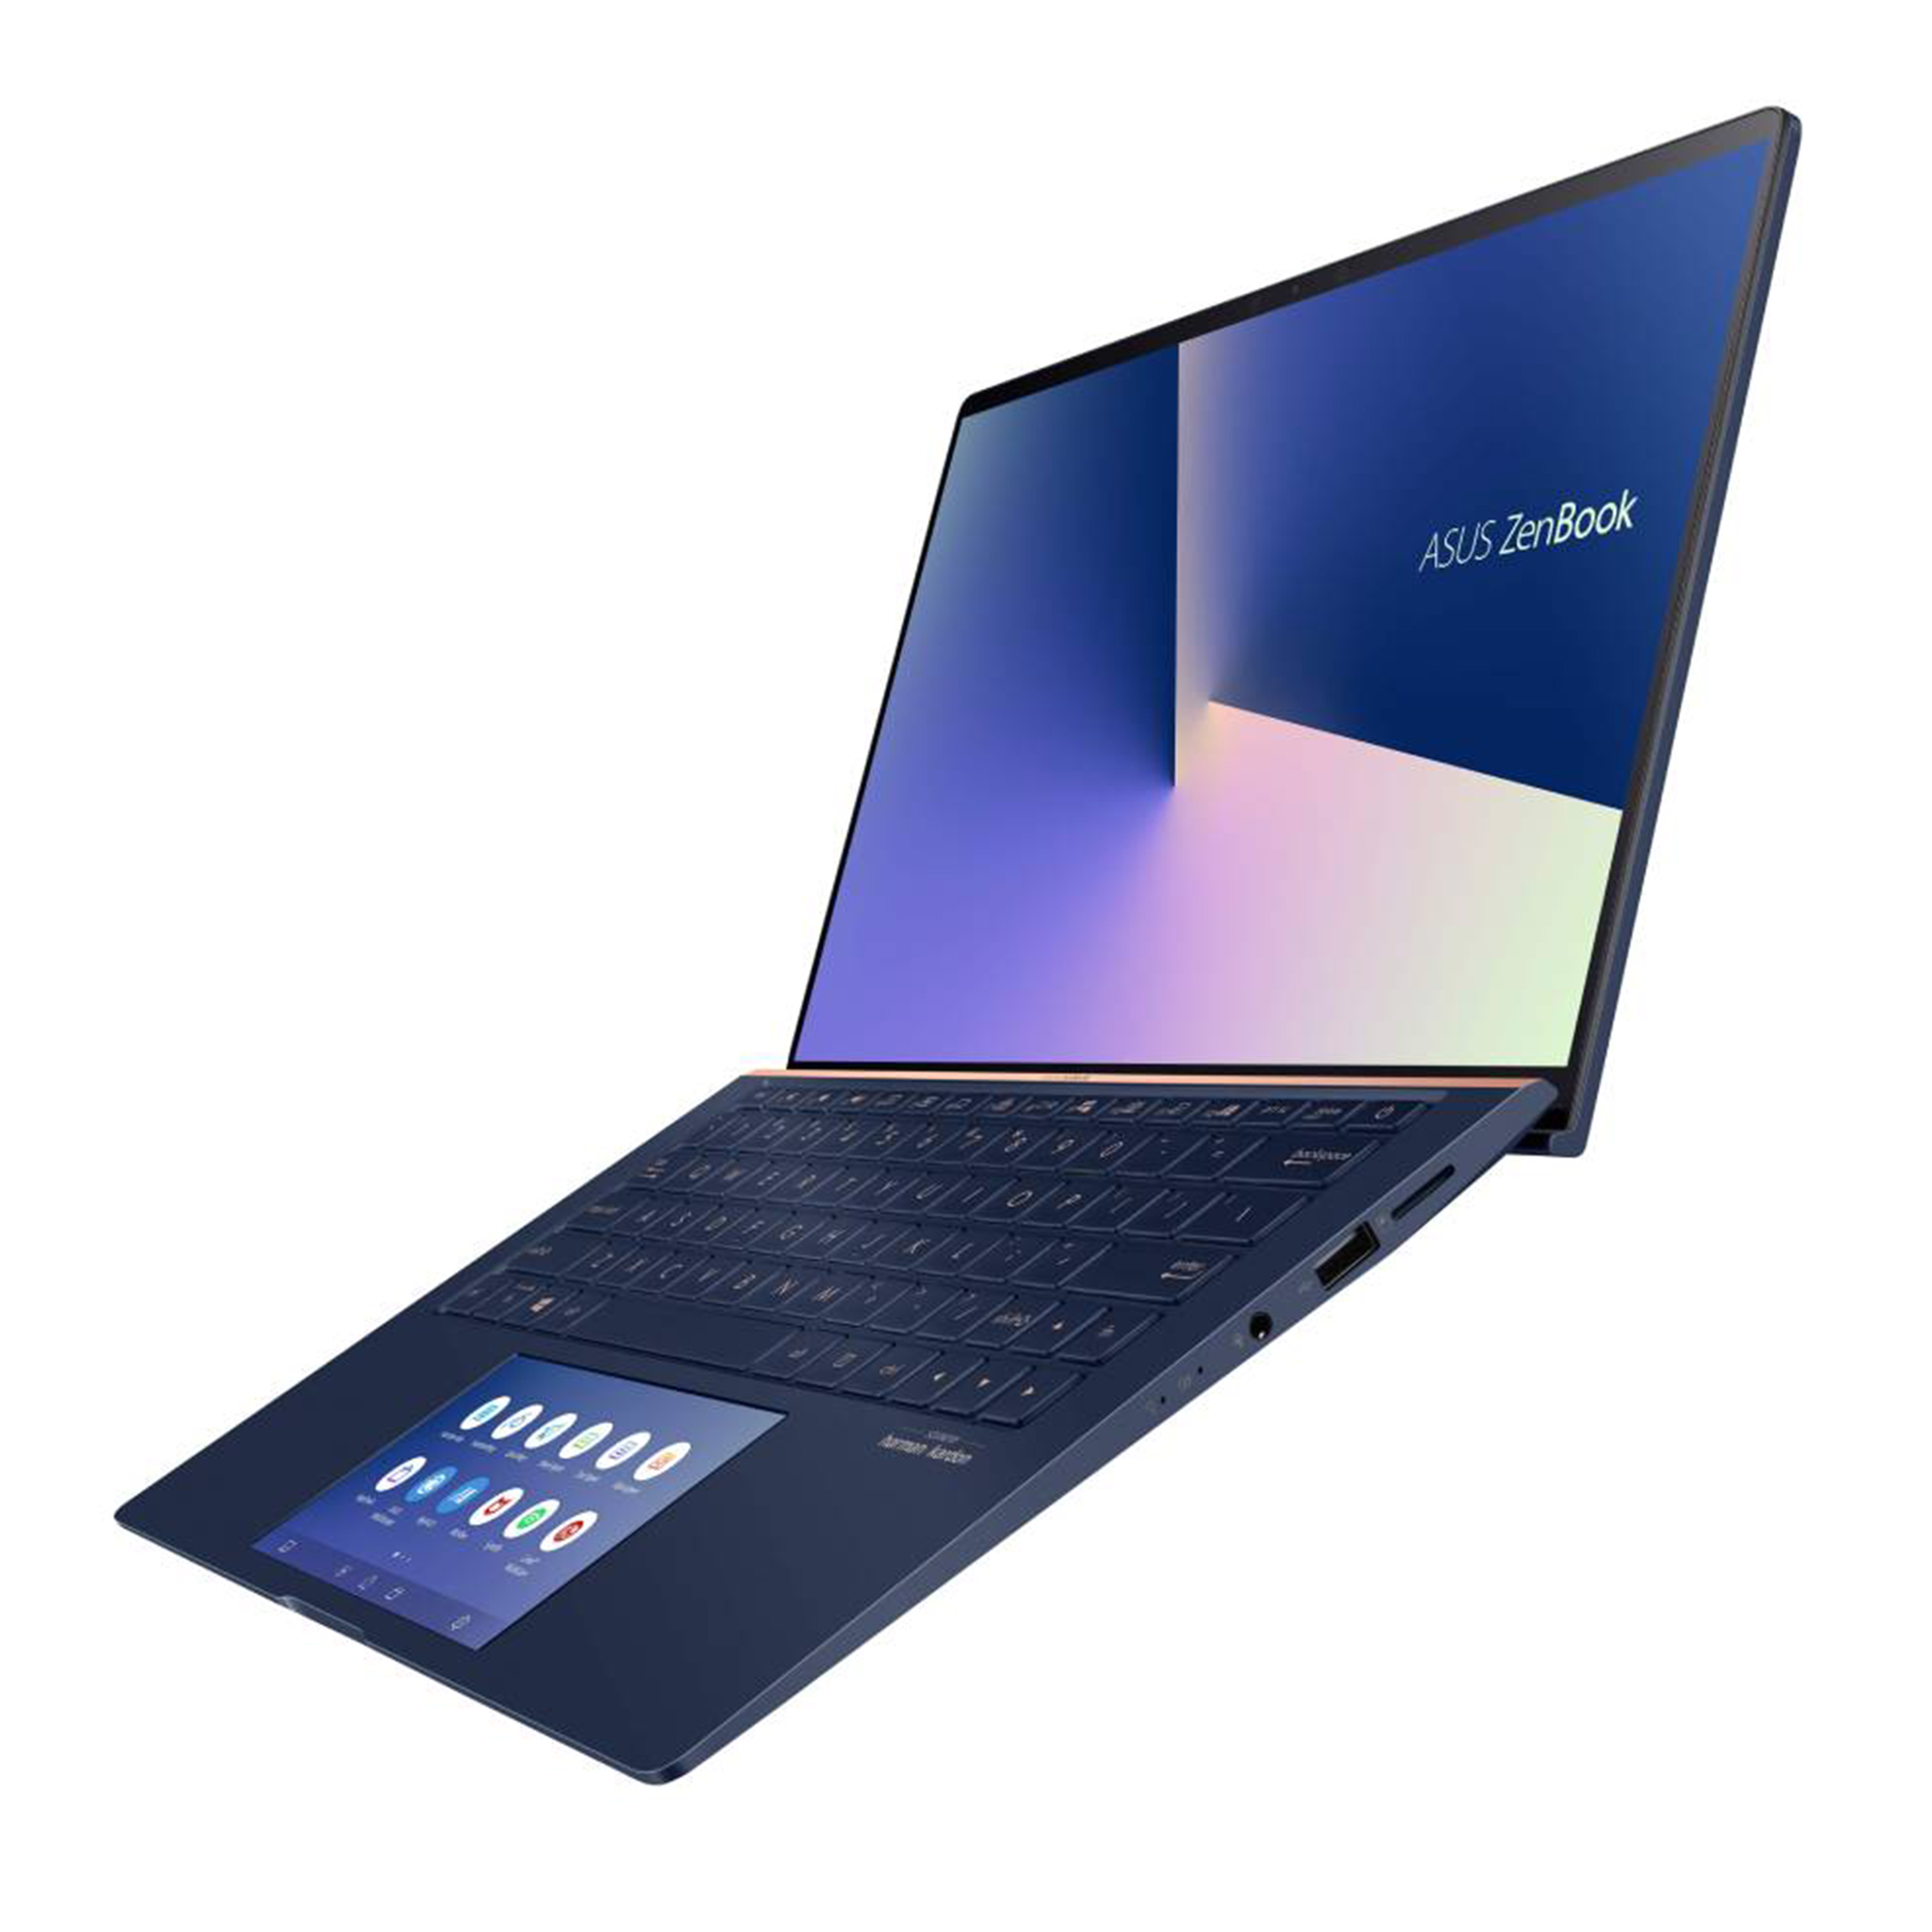 エイスース ゼンブック ウルトラブック ASUS Zenbook 13.3-Inch Touchscreen Laptop (Core i7  4500U 1.8 GHz/ 8GB RAM/ 128GB SSD/ Integrated Intel HD Grap 